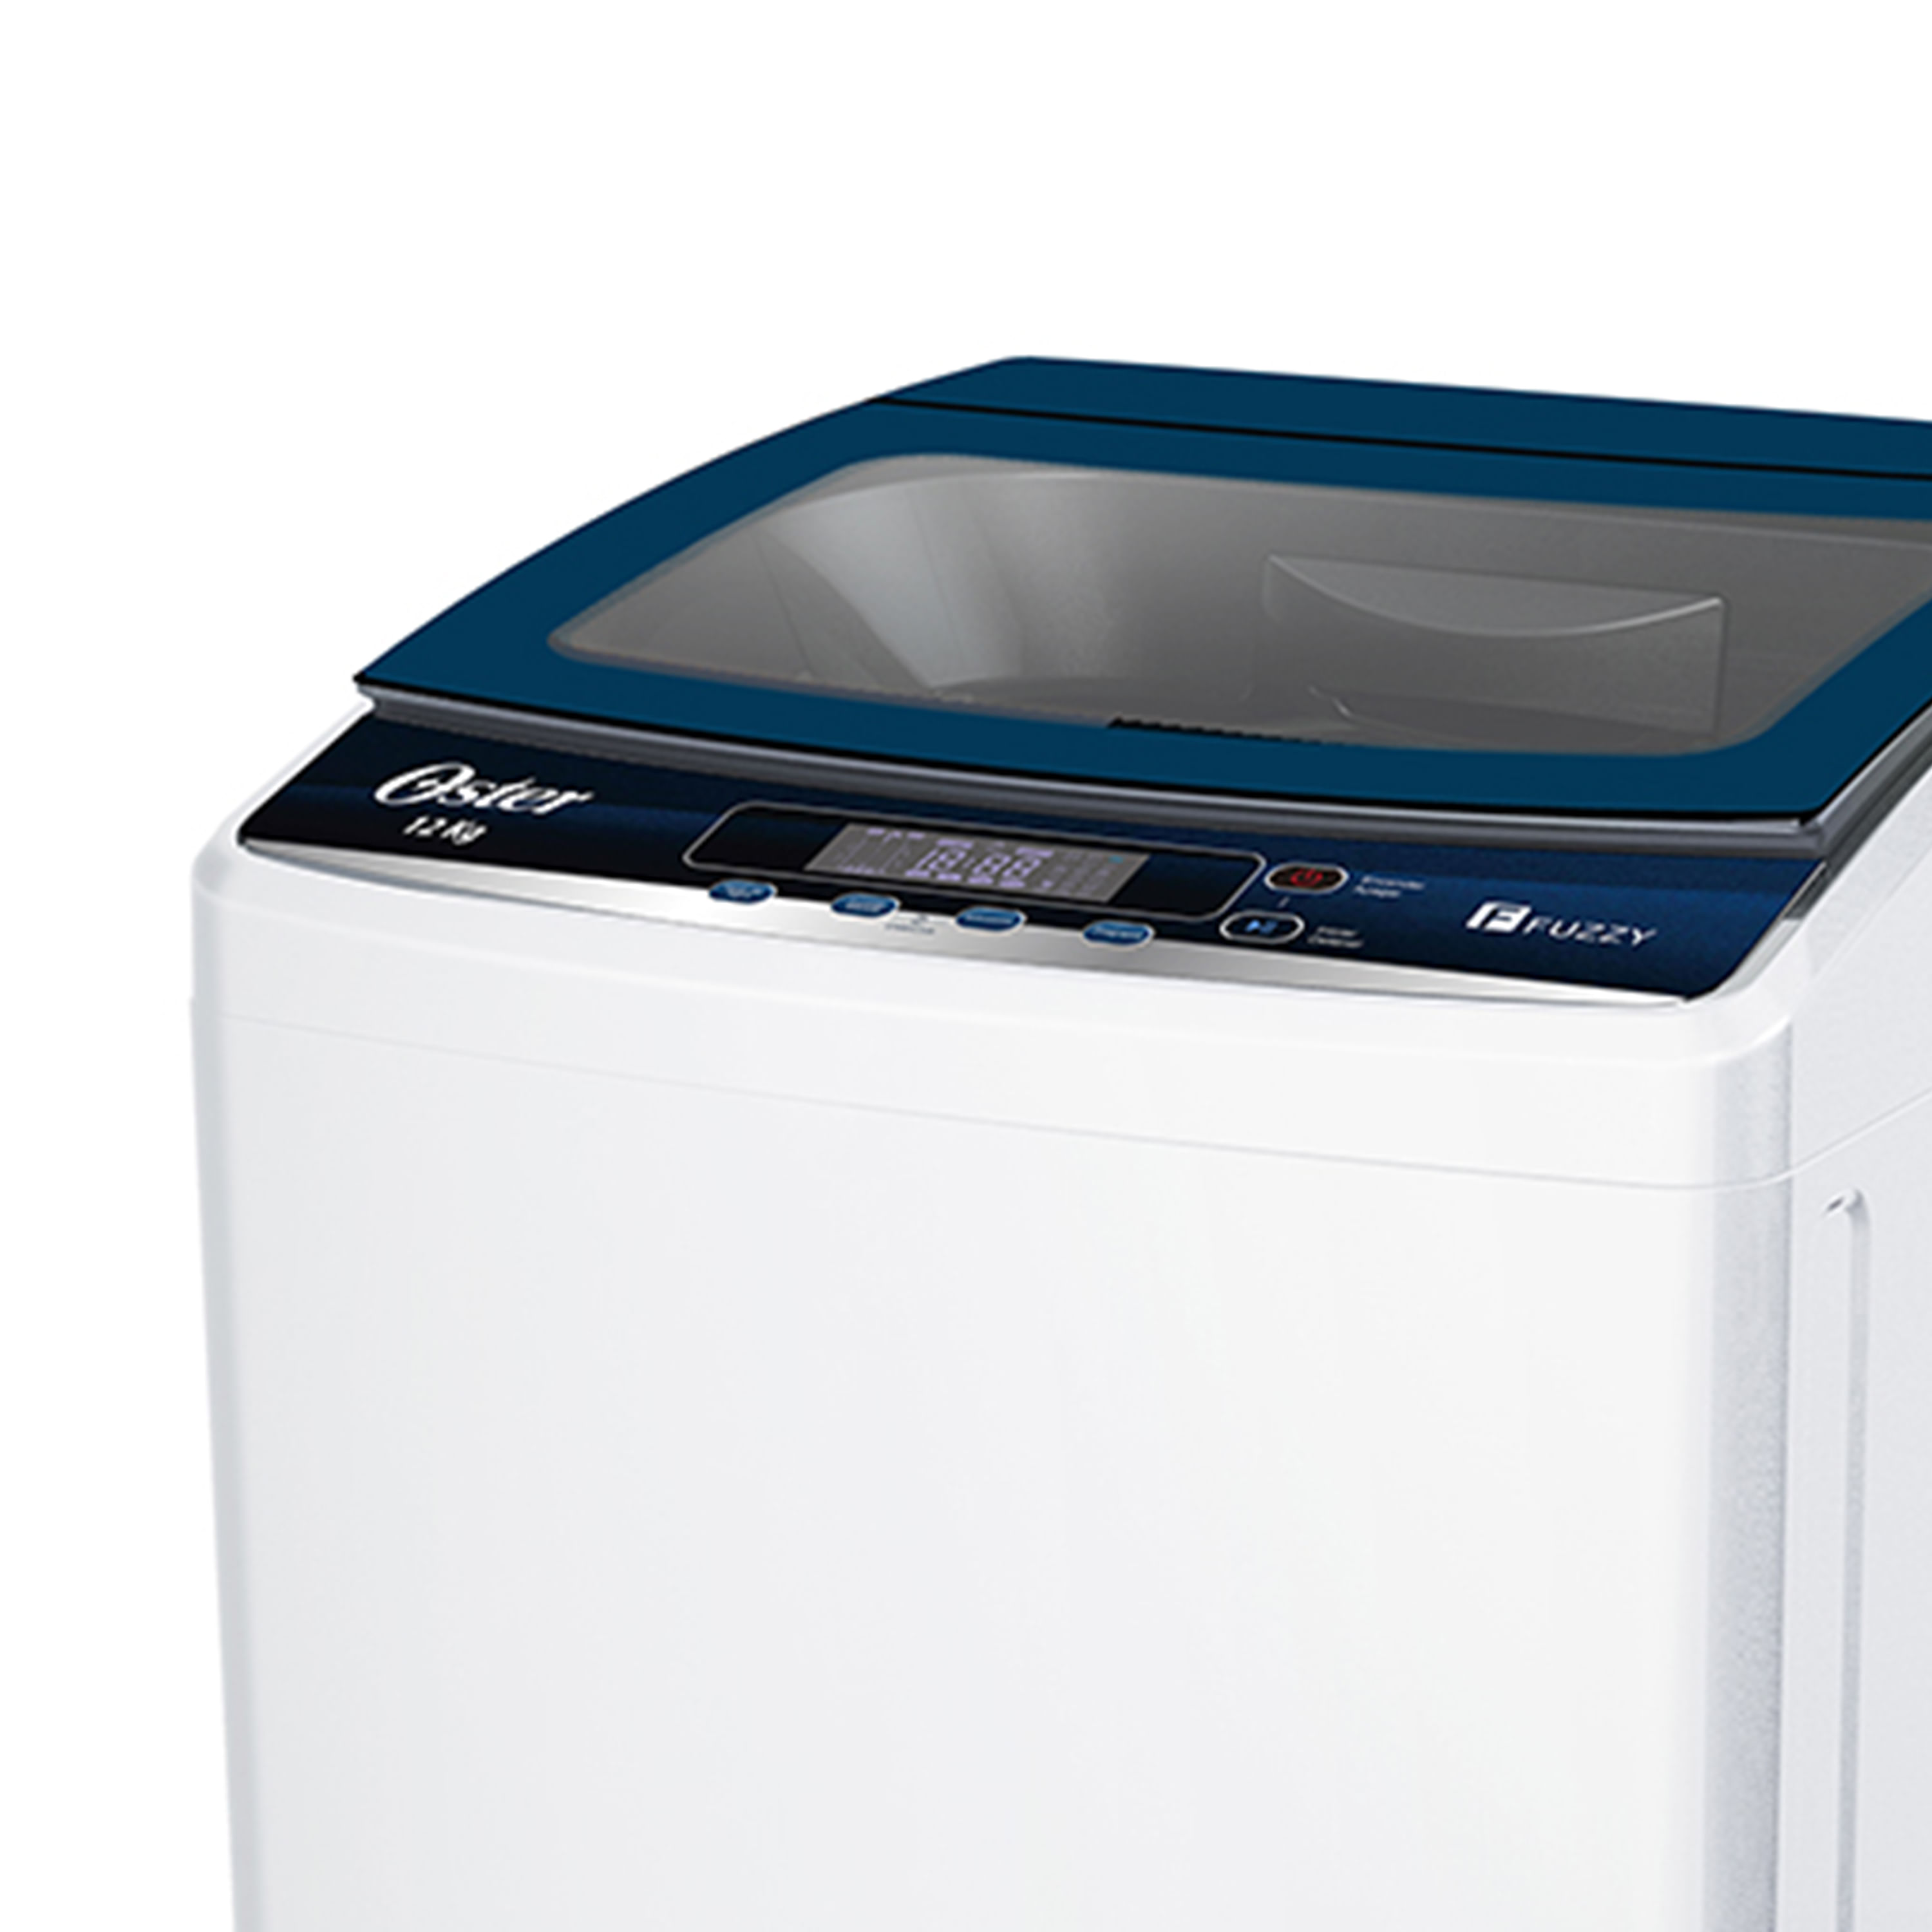 Venta de repuestos para lavadoras en Cali - Mundo Digital Balanta